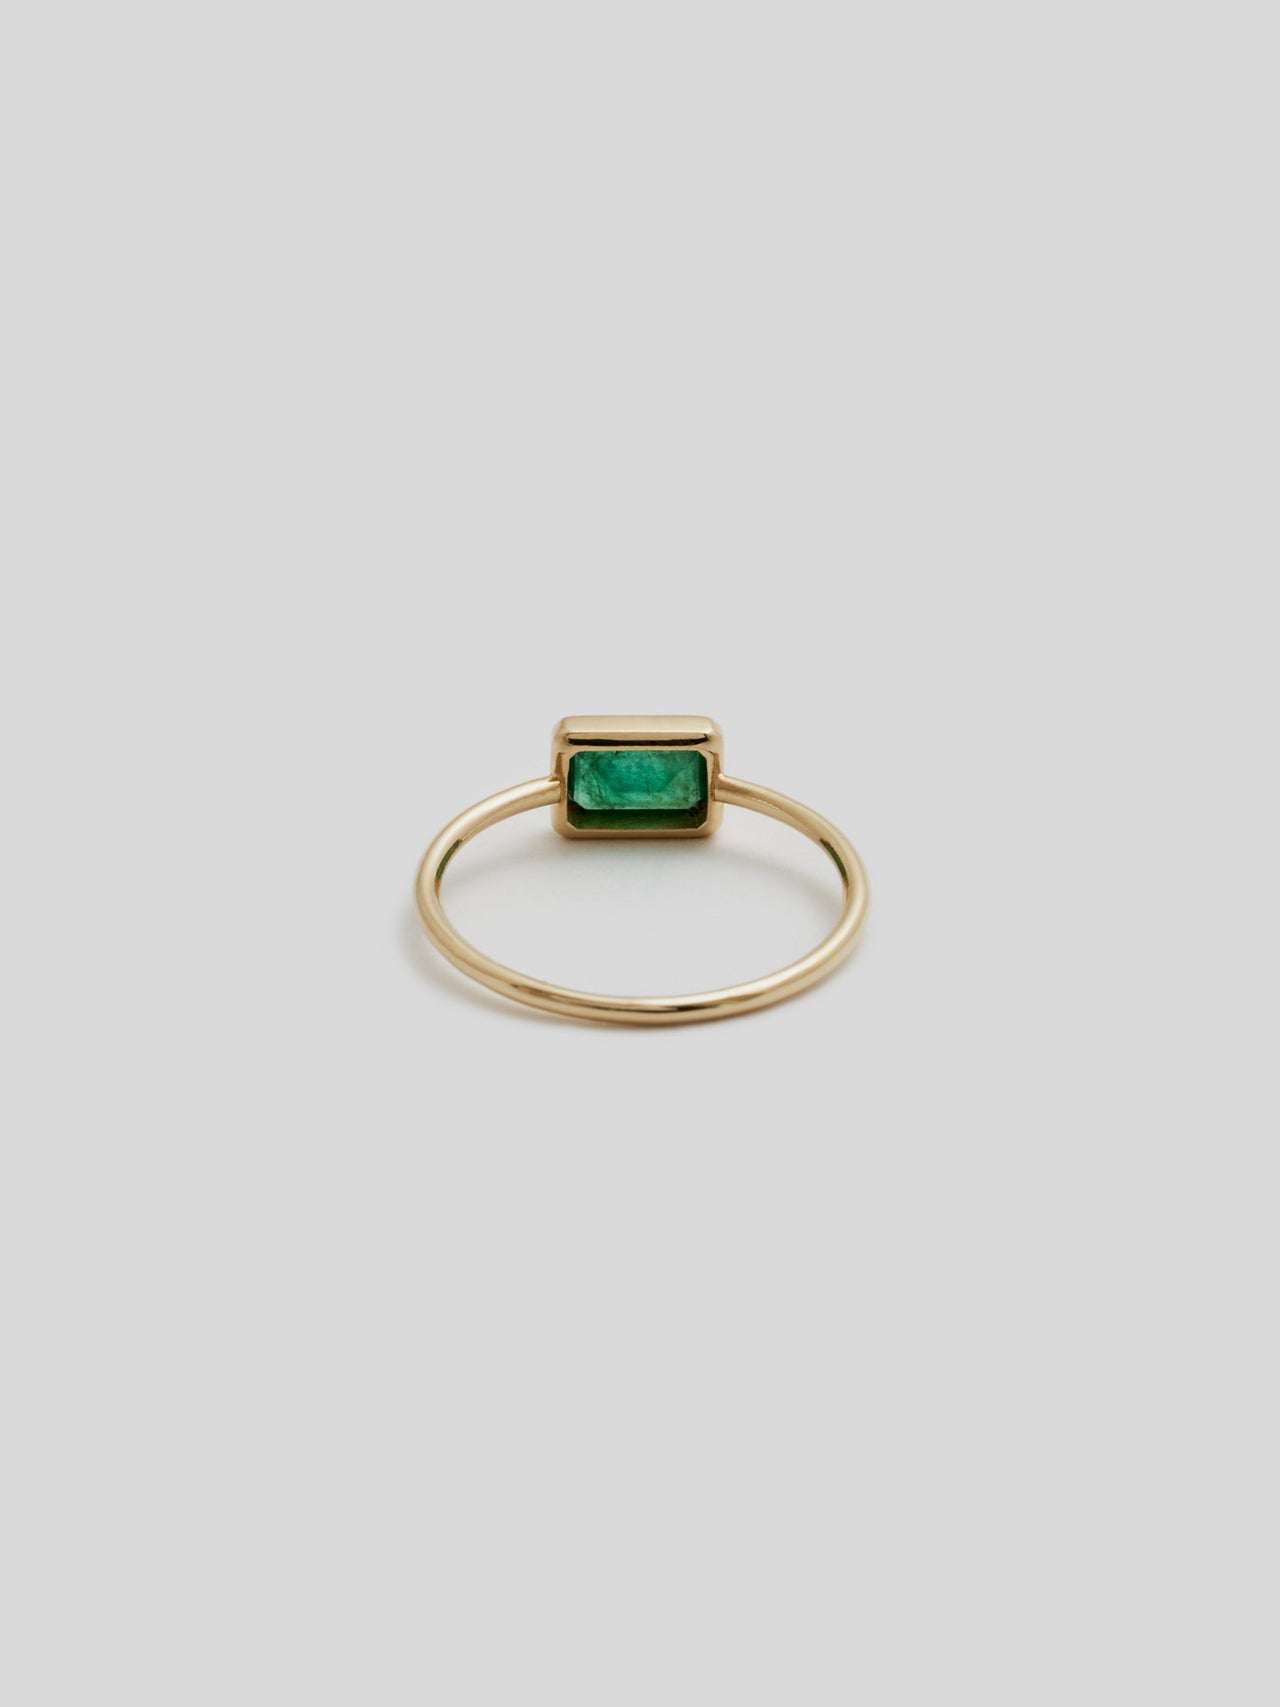 Back Shot of Emerald Cut Bezel Ring V.I: 14Kt Yellow Gold Bezel Ring with 4x6mm Emerald Cut Green Quartz